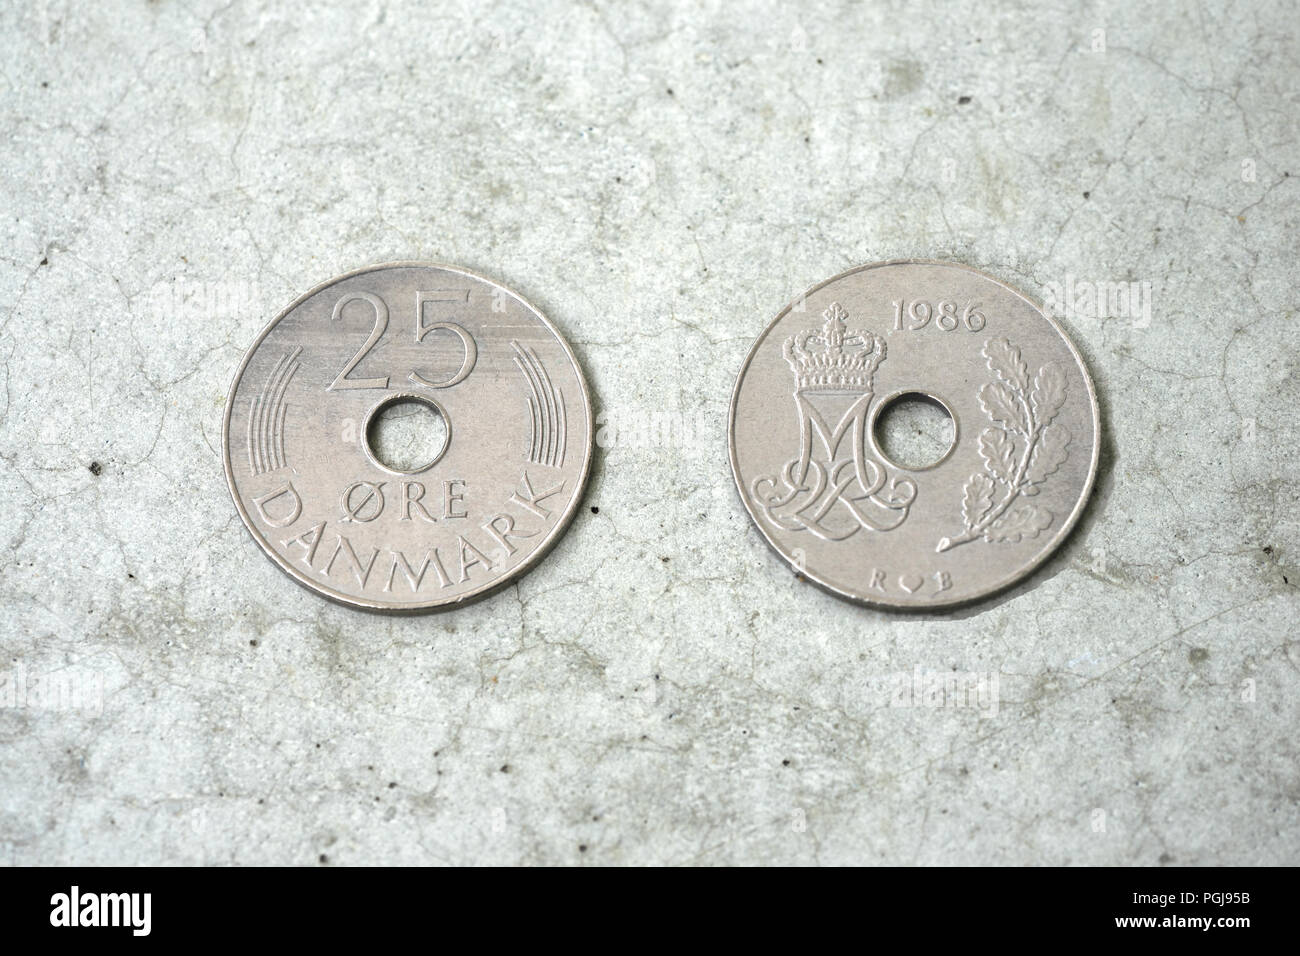 Frente y parte posterior de una moneda danesa descatalogada de 25 øre (oere), dinero danés Foto de stock